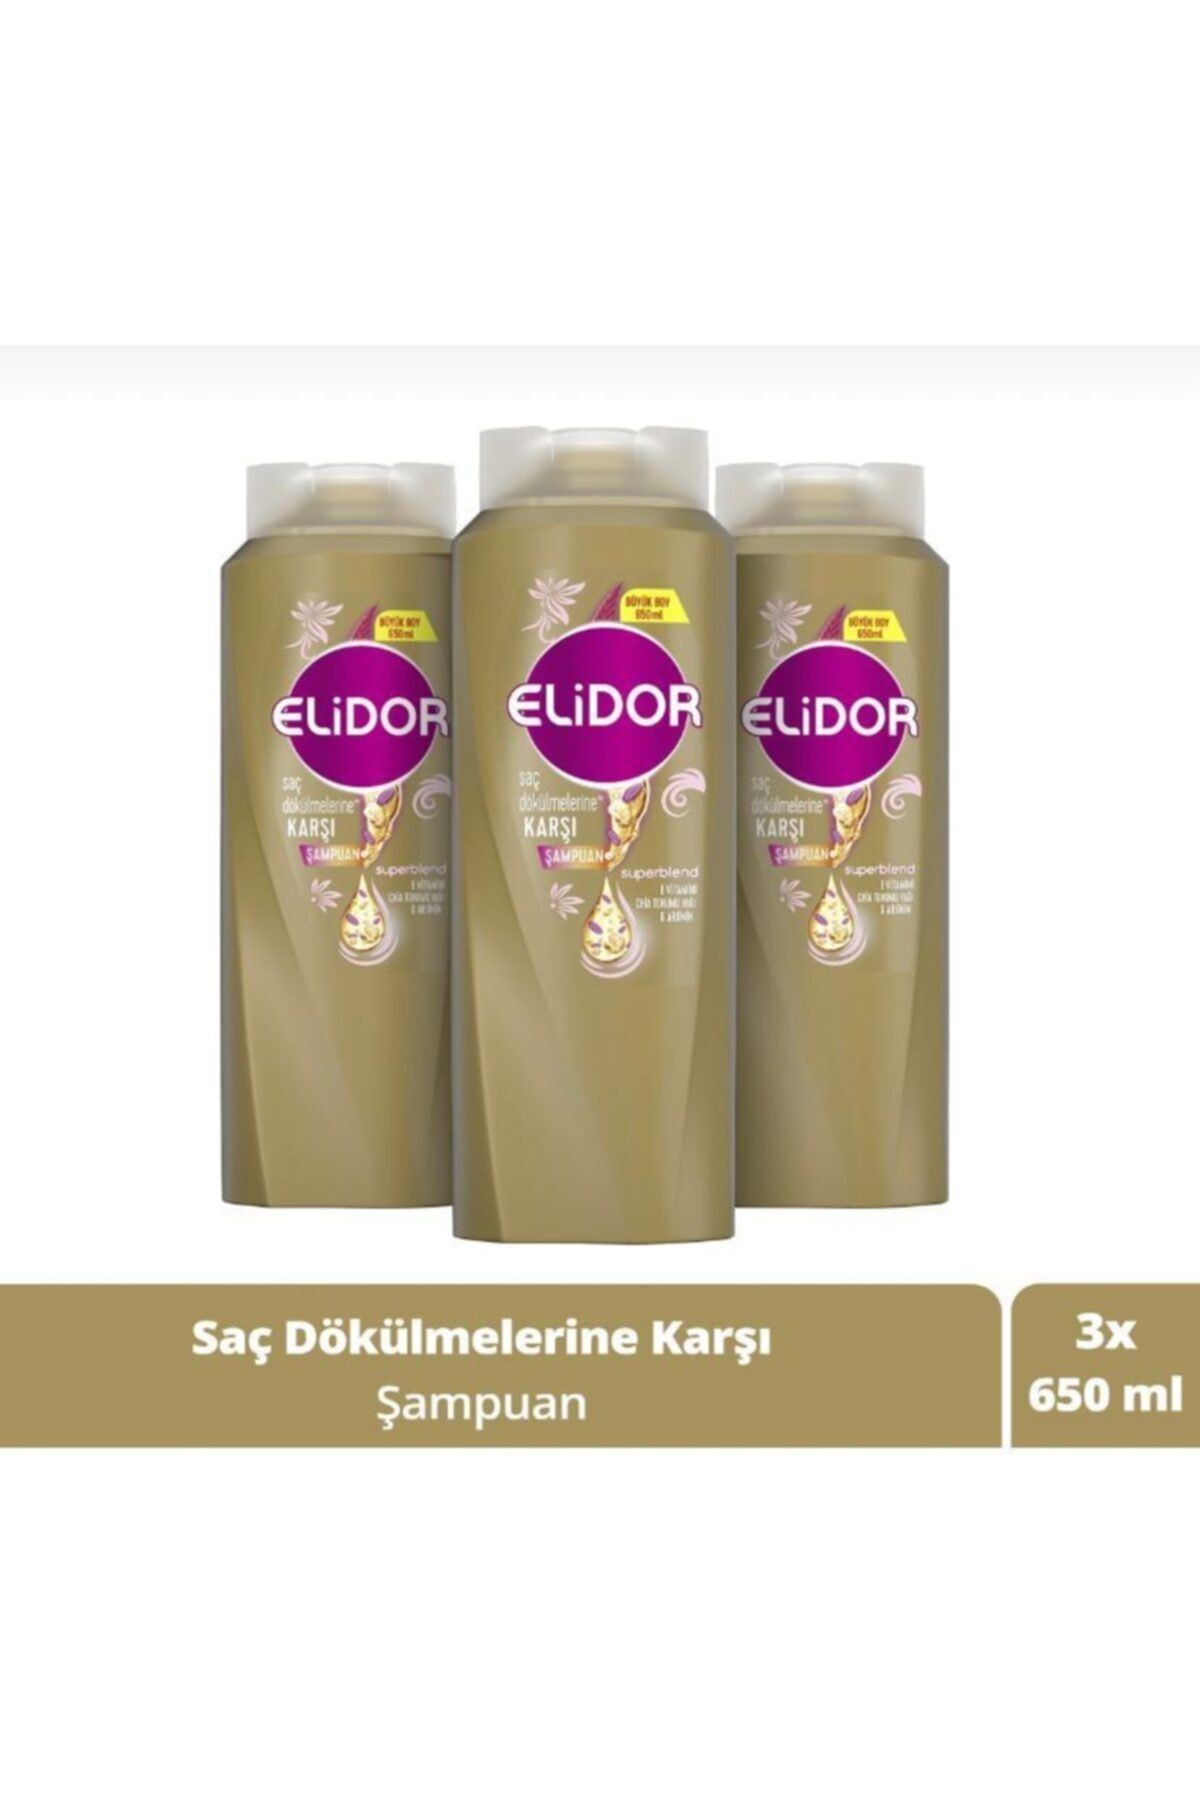 Elidor Saç Dökülmelerine Karşı Şampuan 650 ml